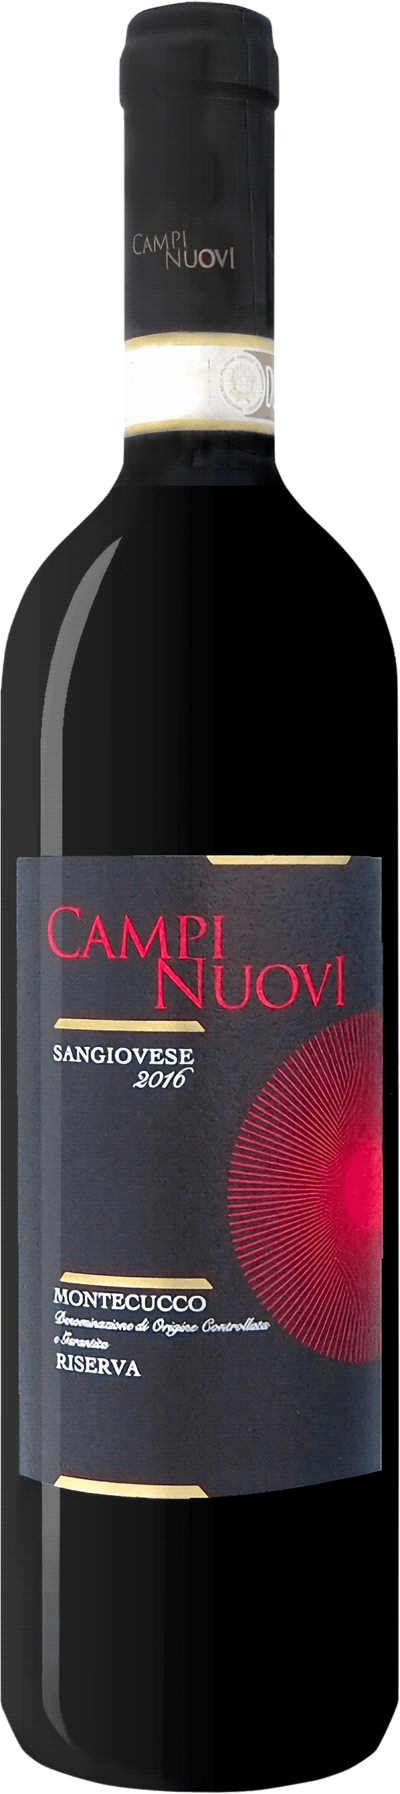 Campinuovi Montecucco Sangiovese Riserva 2016 - DinVinguide Campi